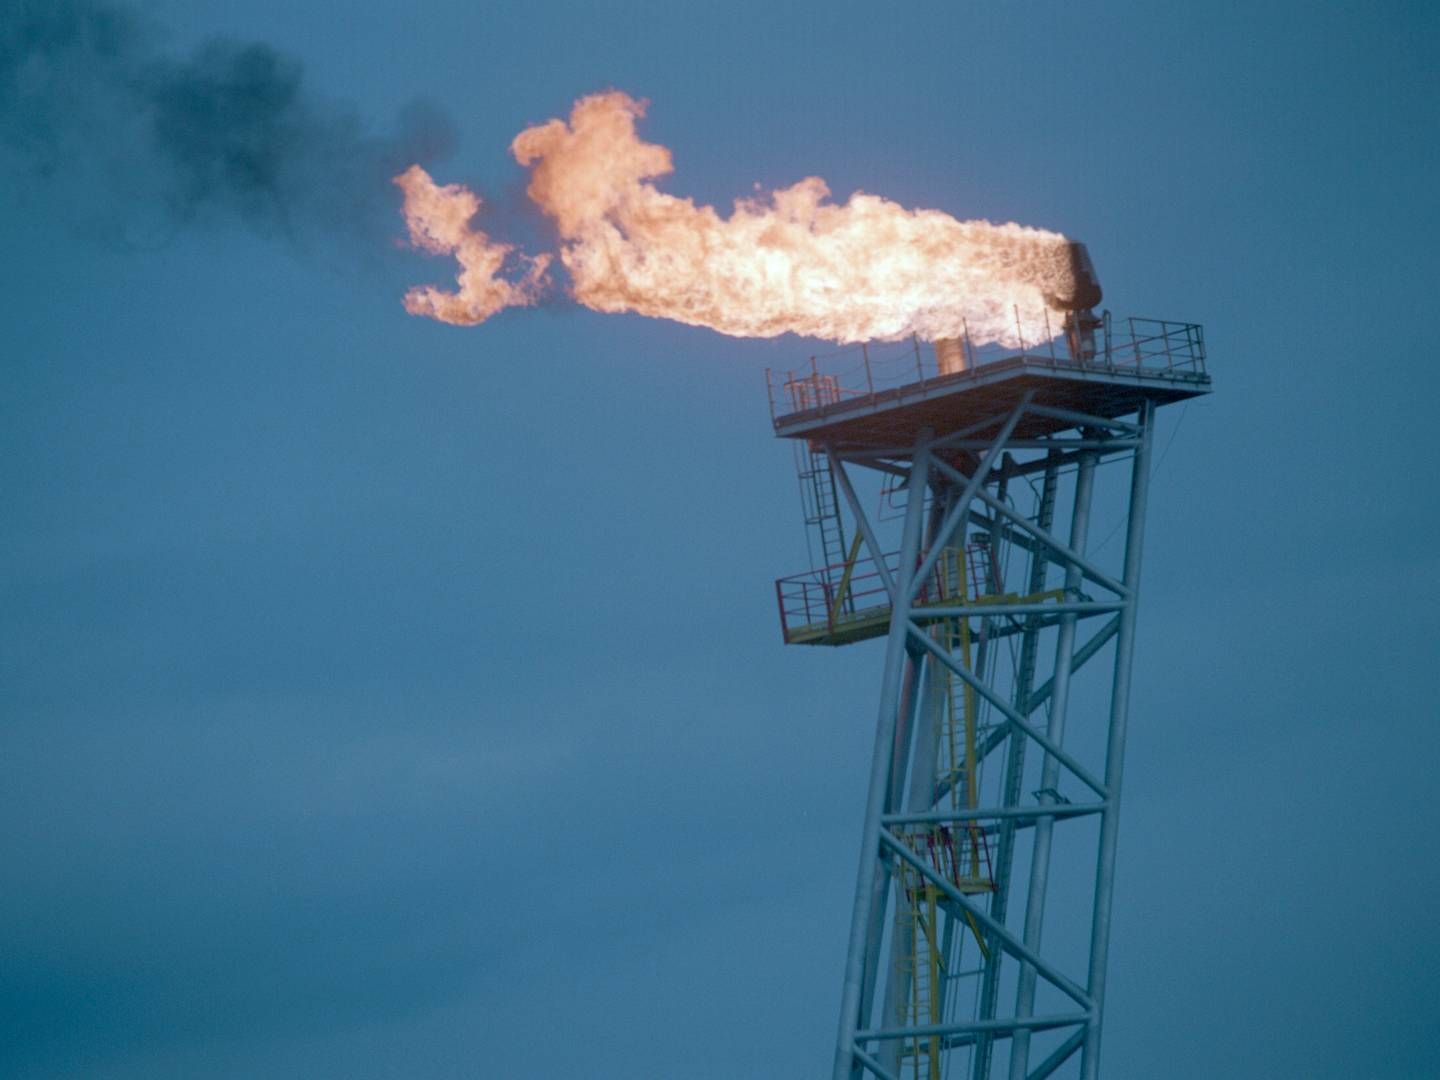 Både eksporten og verdien av råoljen nådde rekordnivåer i april, mens gassinntektene falt. Illustrasjonsfoto. | Foto: Jon Eeg/NTB